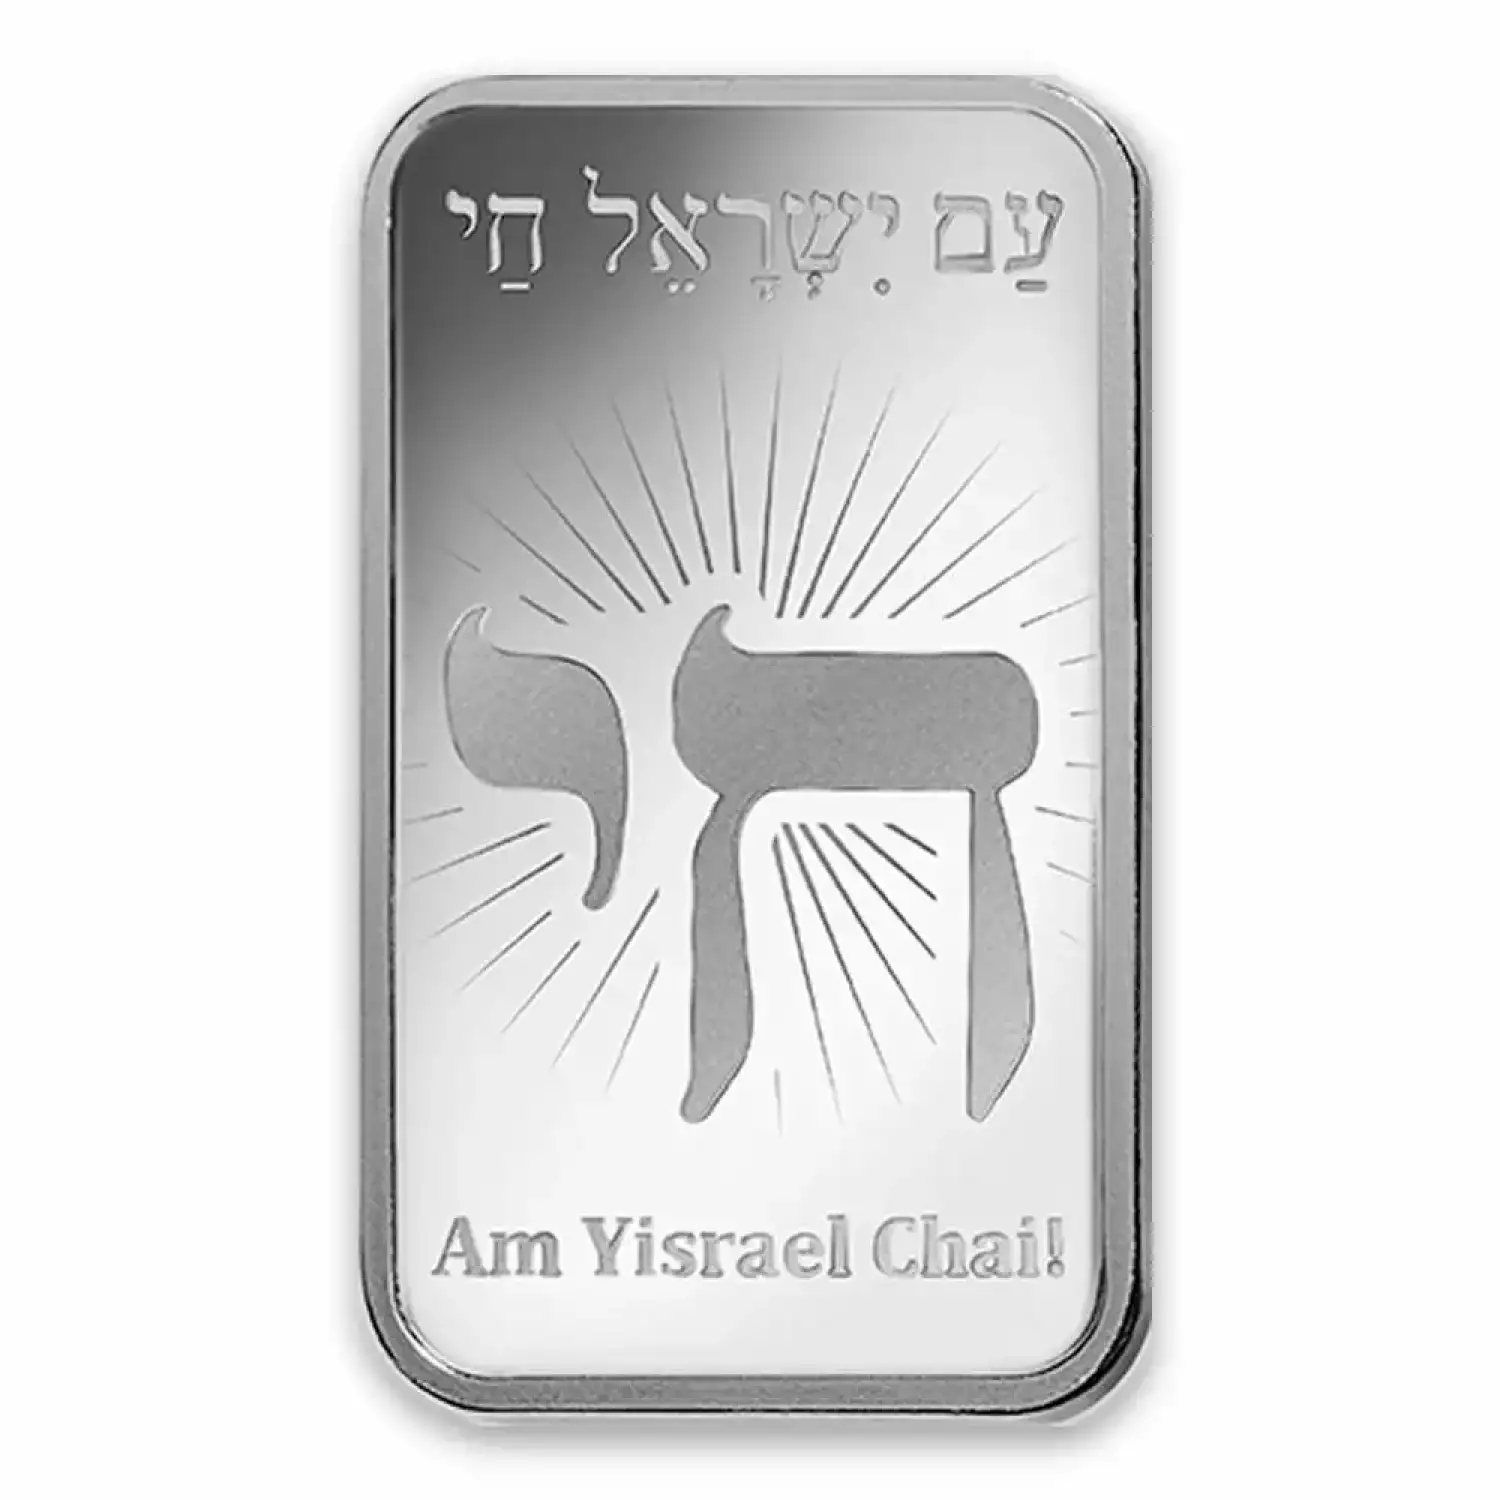 10g PAMP Silver Bar - Am Yisrael Chai! (2)